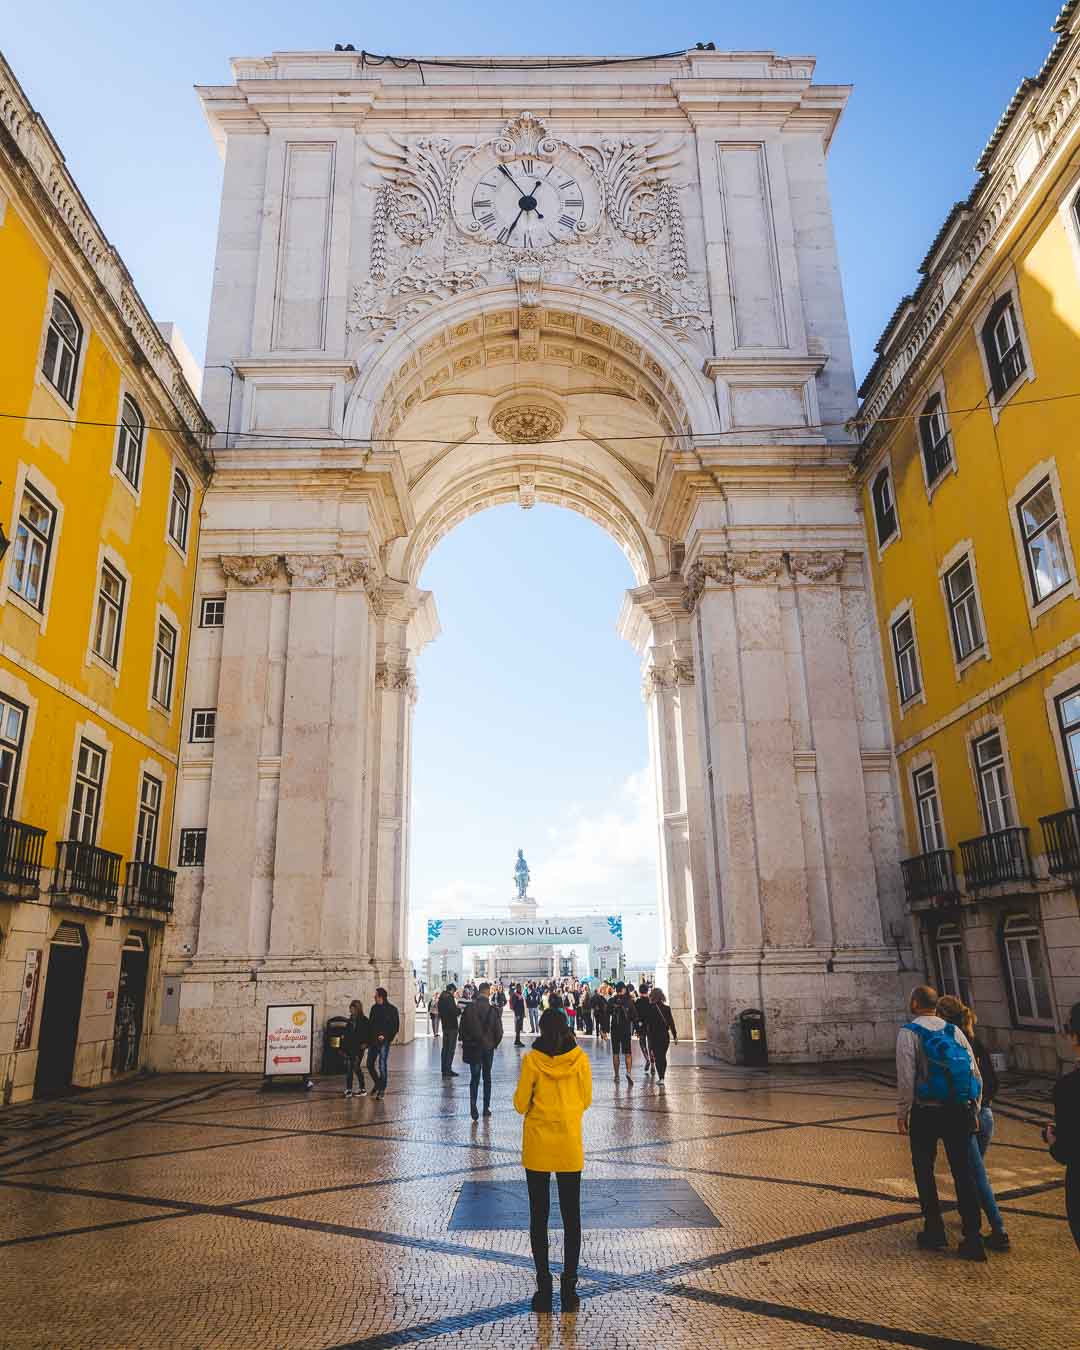 arco da rua augusta lisbon portugal